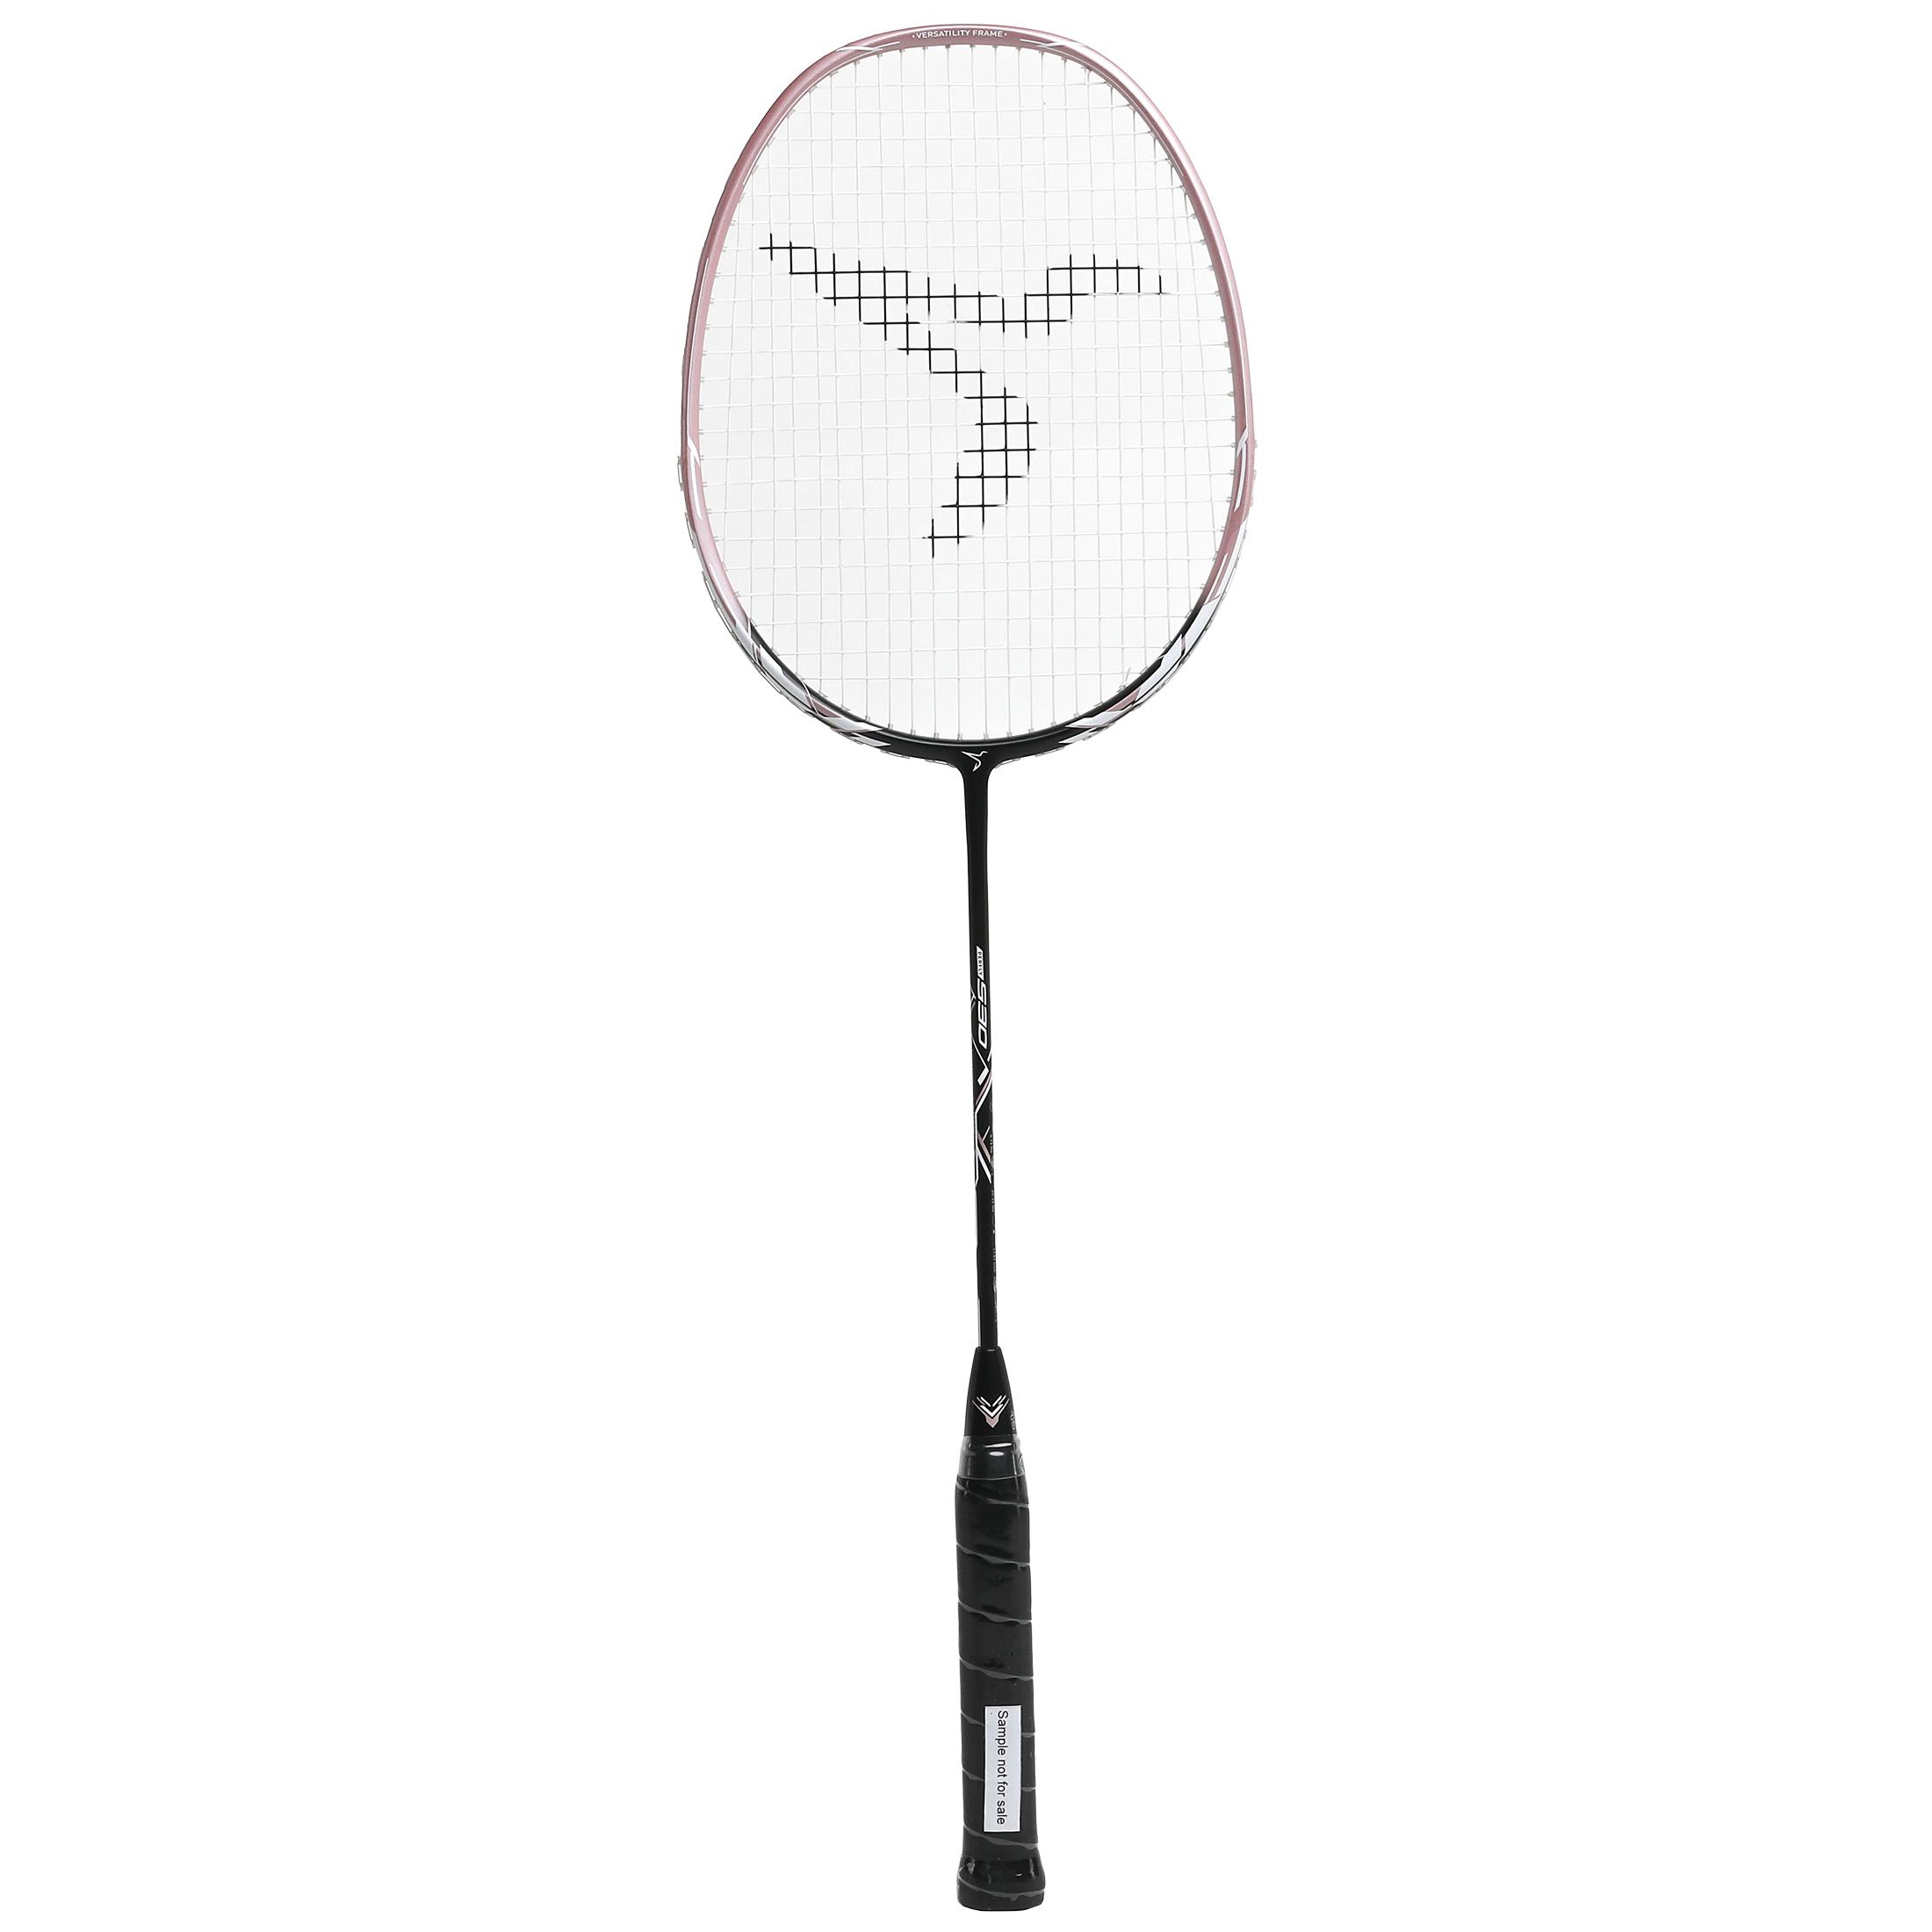 Rachetă badminton BR 530